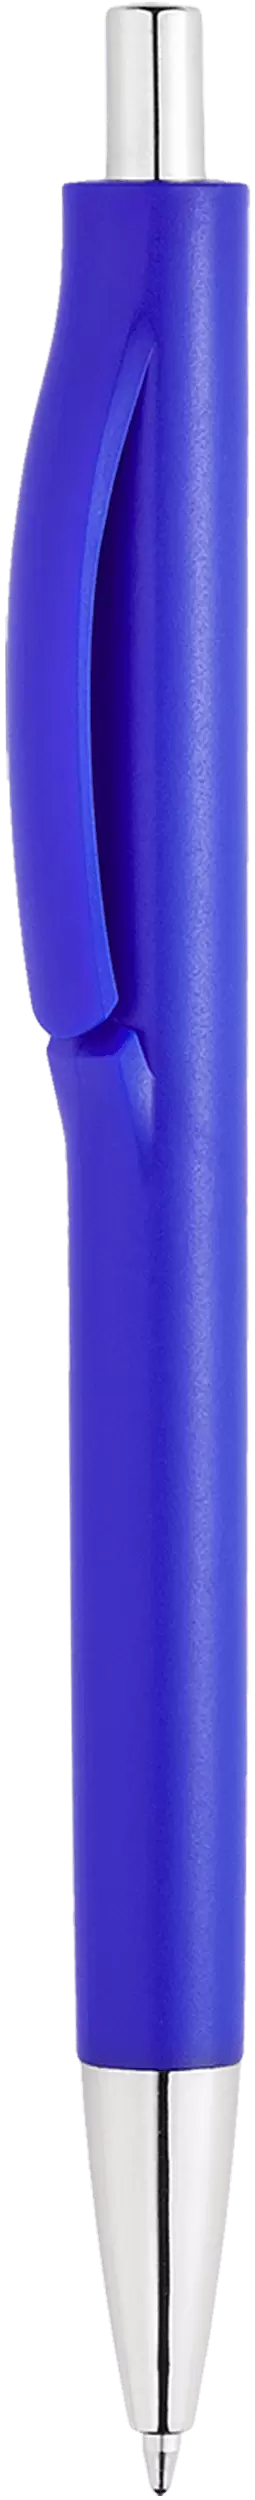 Ручка IGLA CHROME Синяя 1032.01